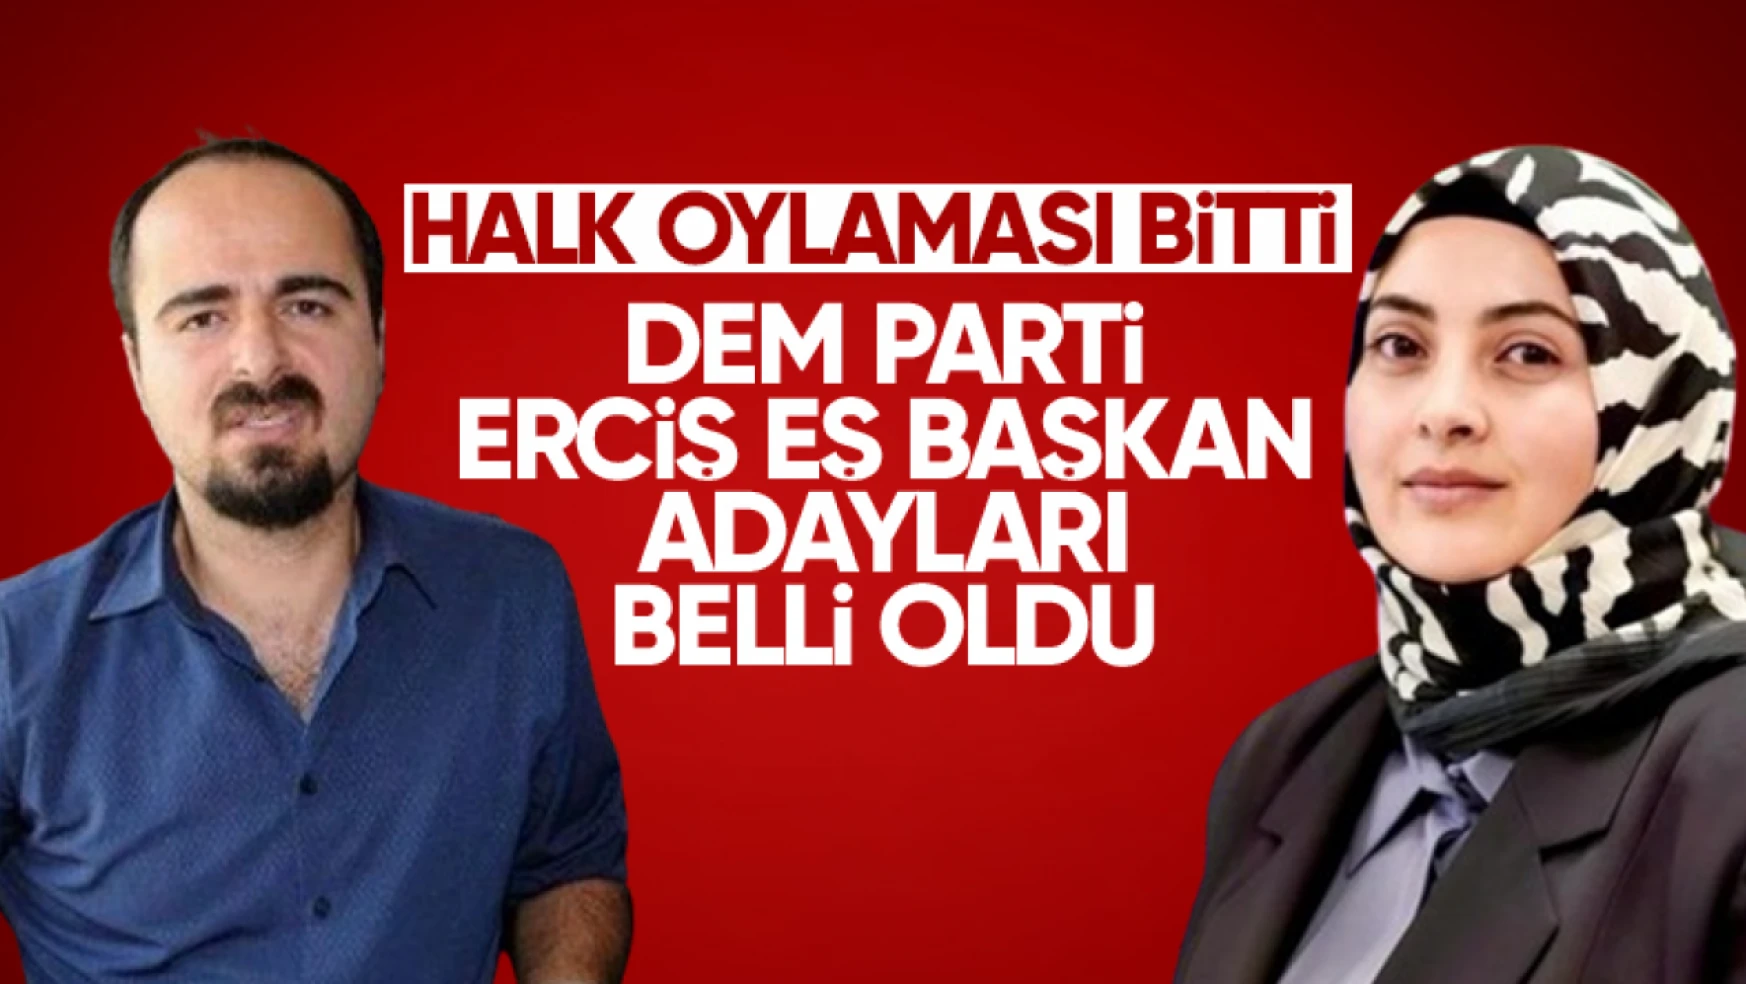 DEM Parti Erciş Eş Başkan adayları belli oldu